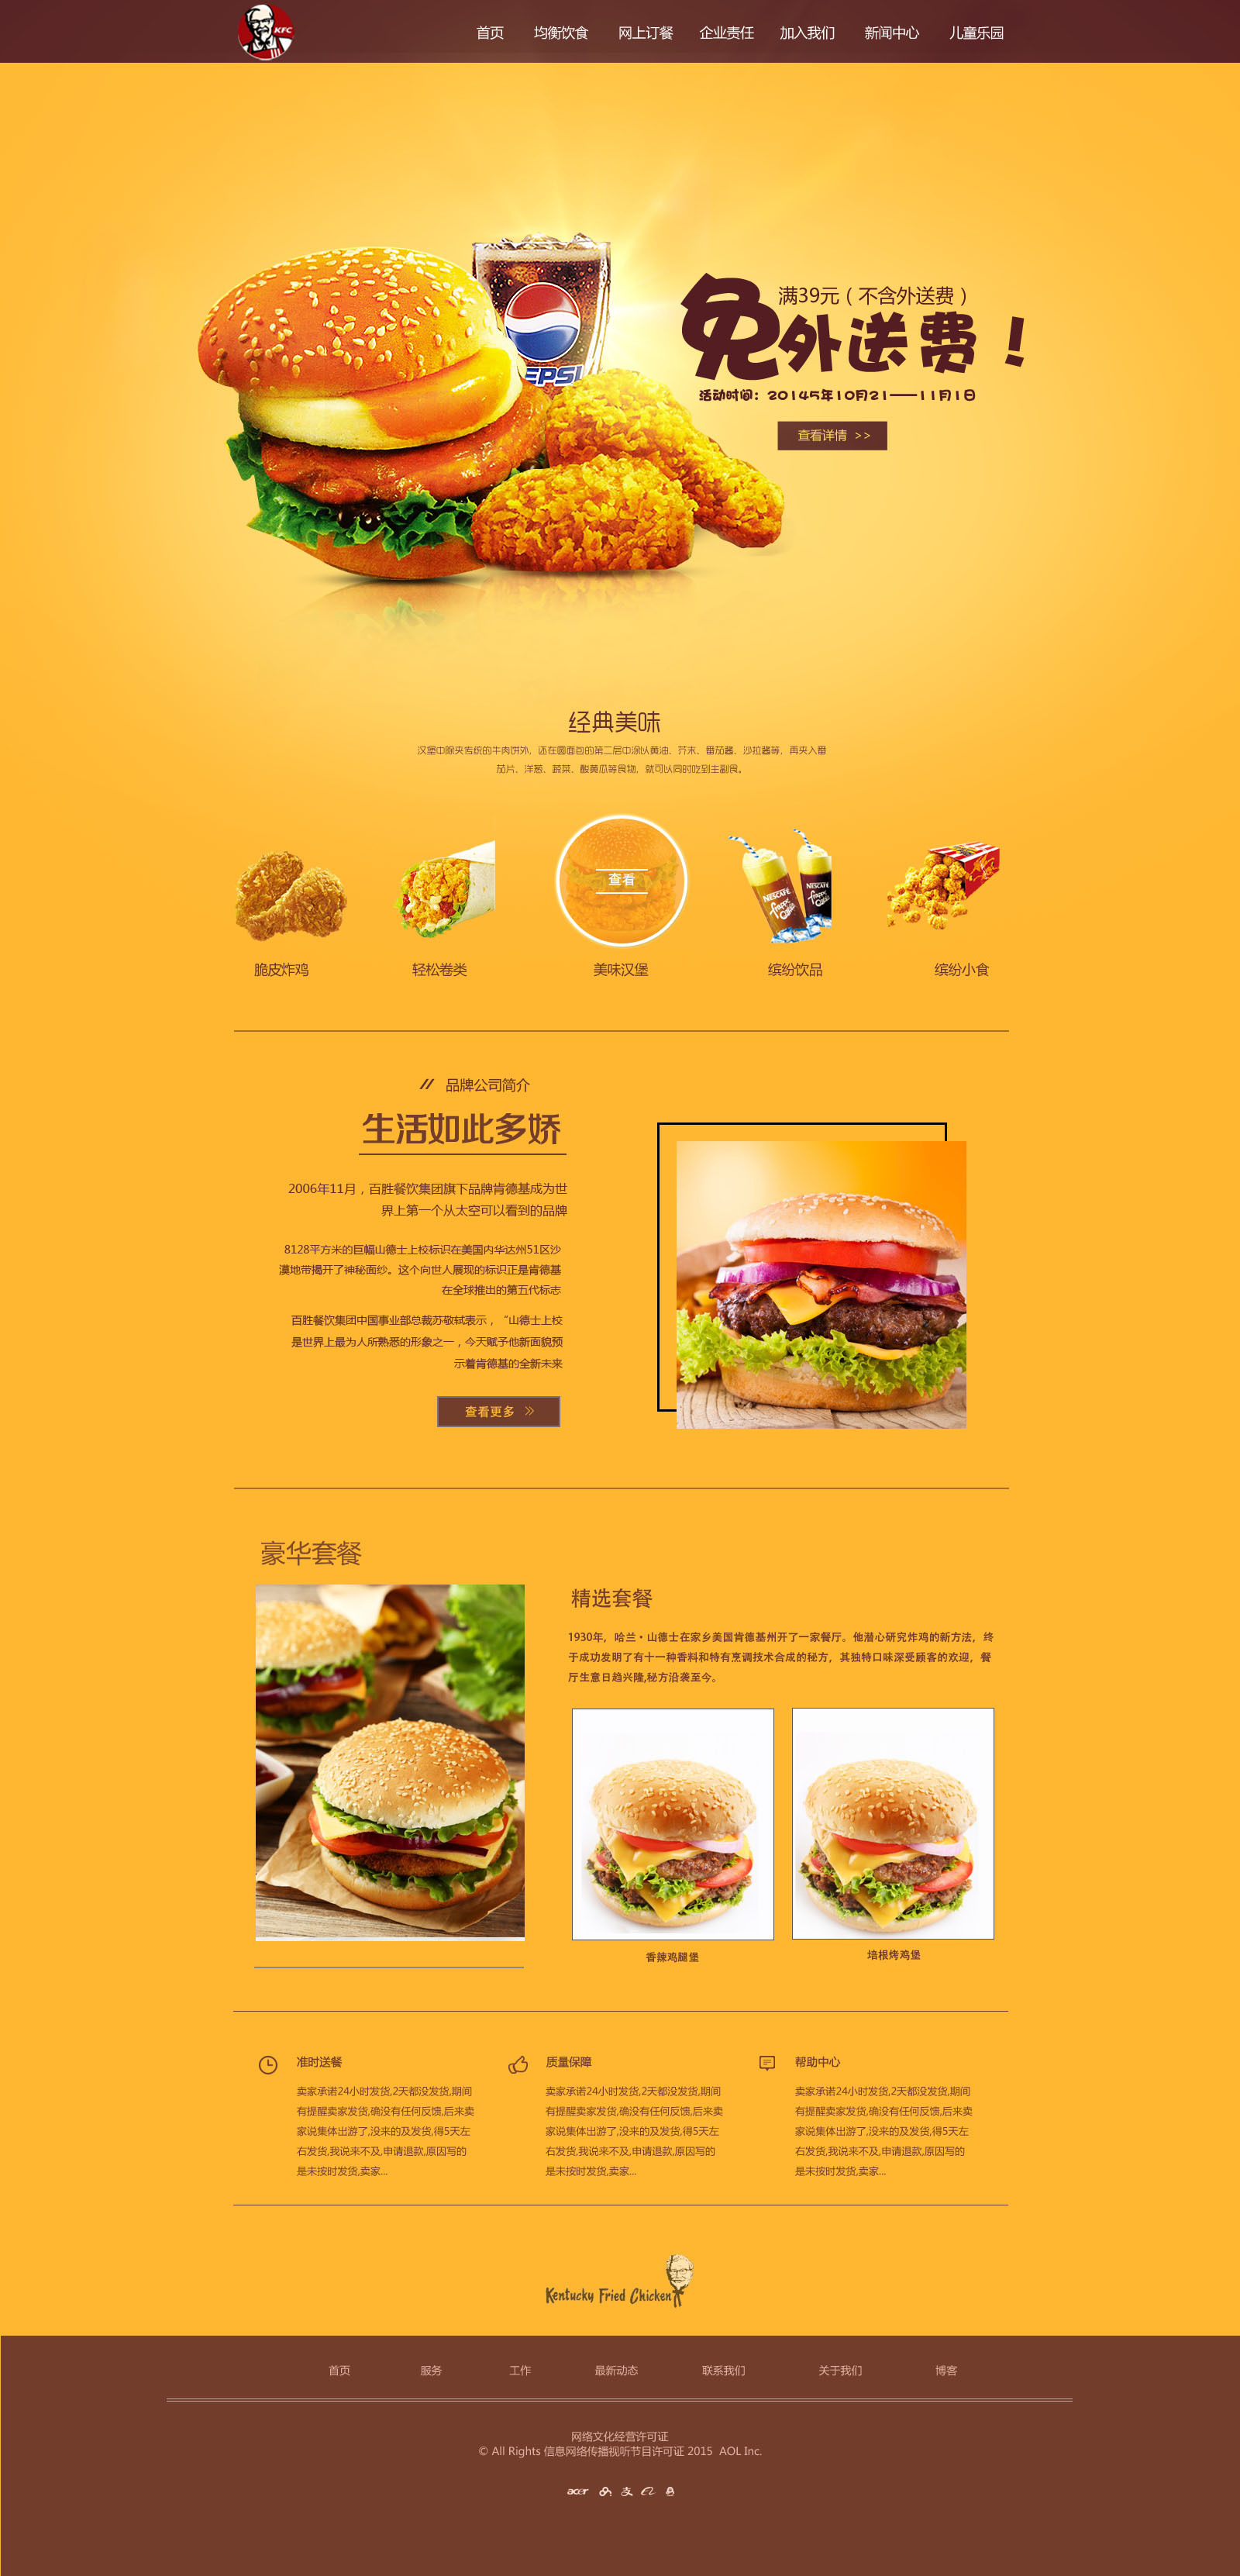 系列汉堡套餐菜单图片下载 - 觅知网